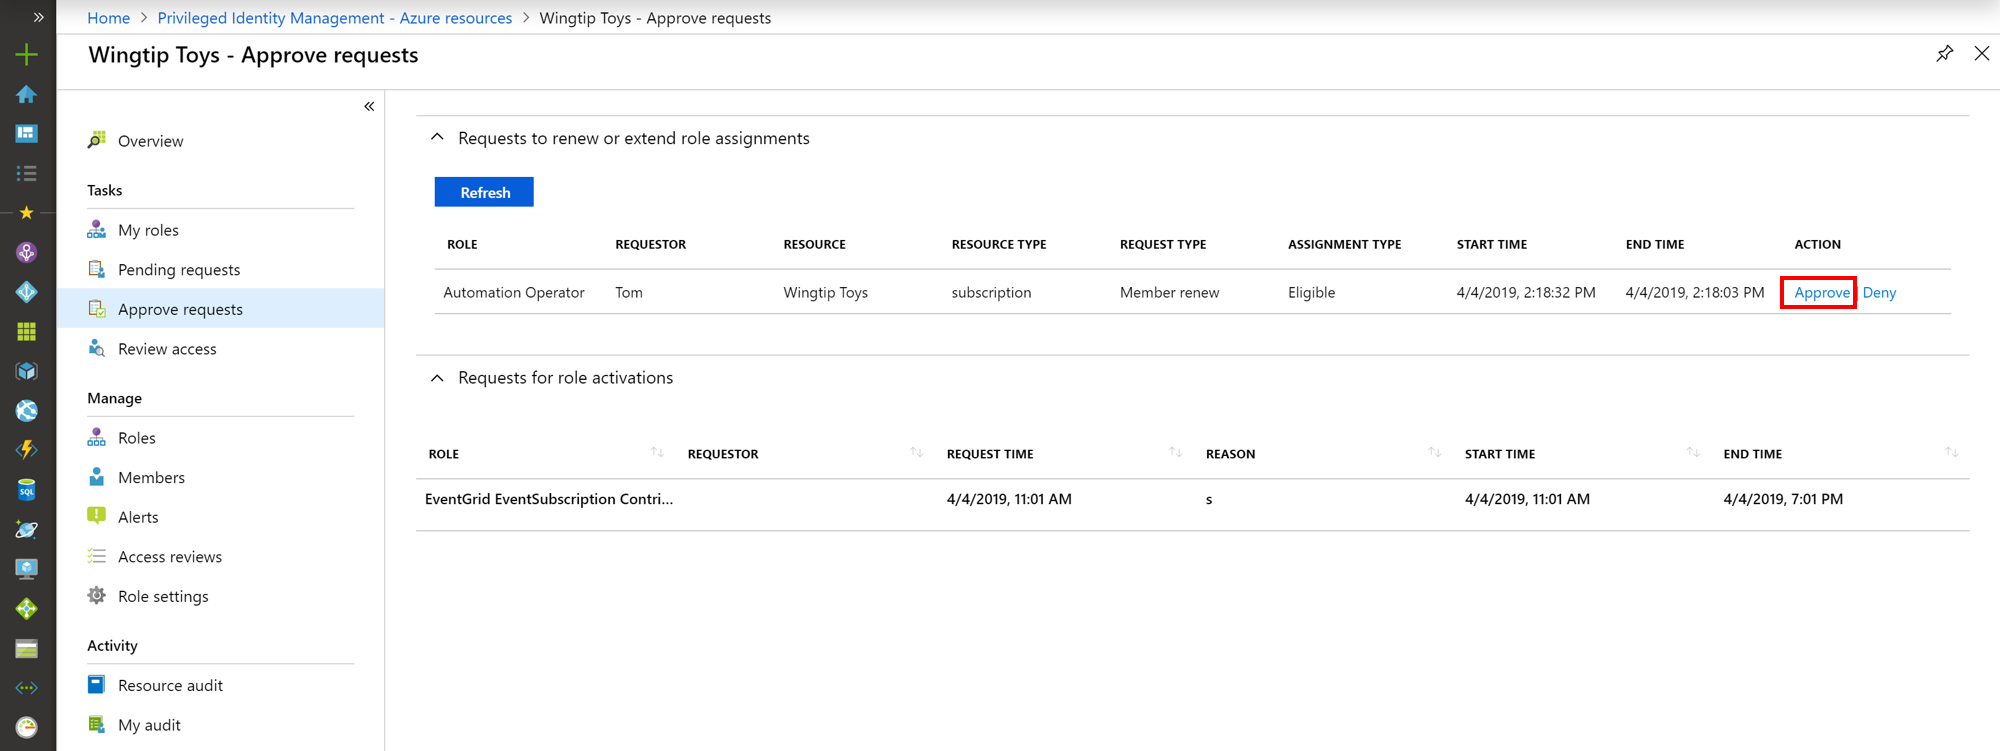 Zrzut ekranu przedstawiający zasoby platformy Azure — zatwierdzanie żądań na stronie z listą żądań i linków do zatwierdzenia lub odmowy.